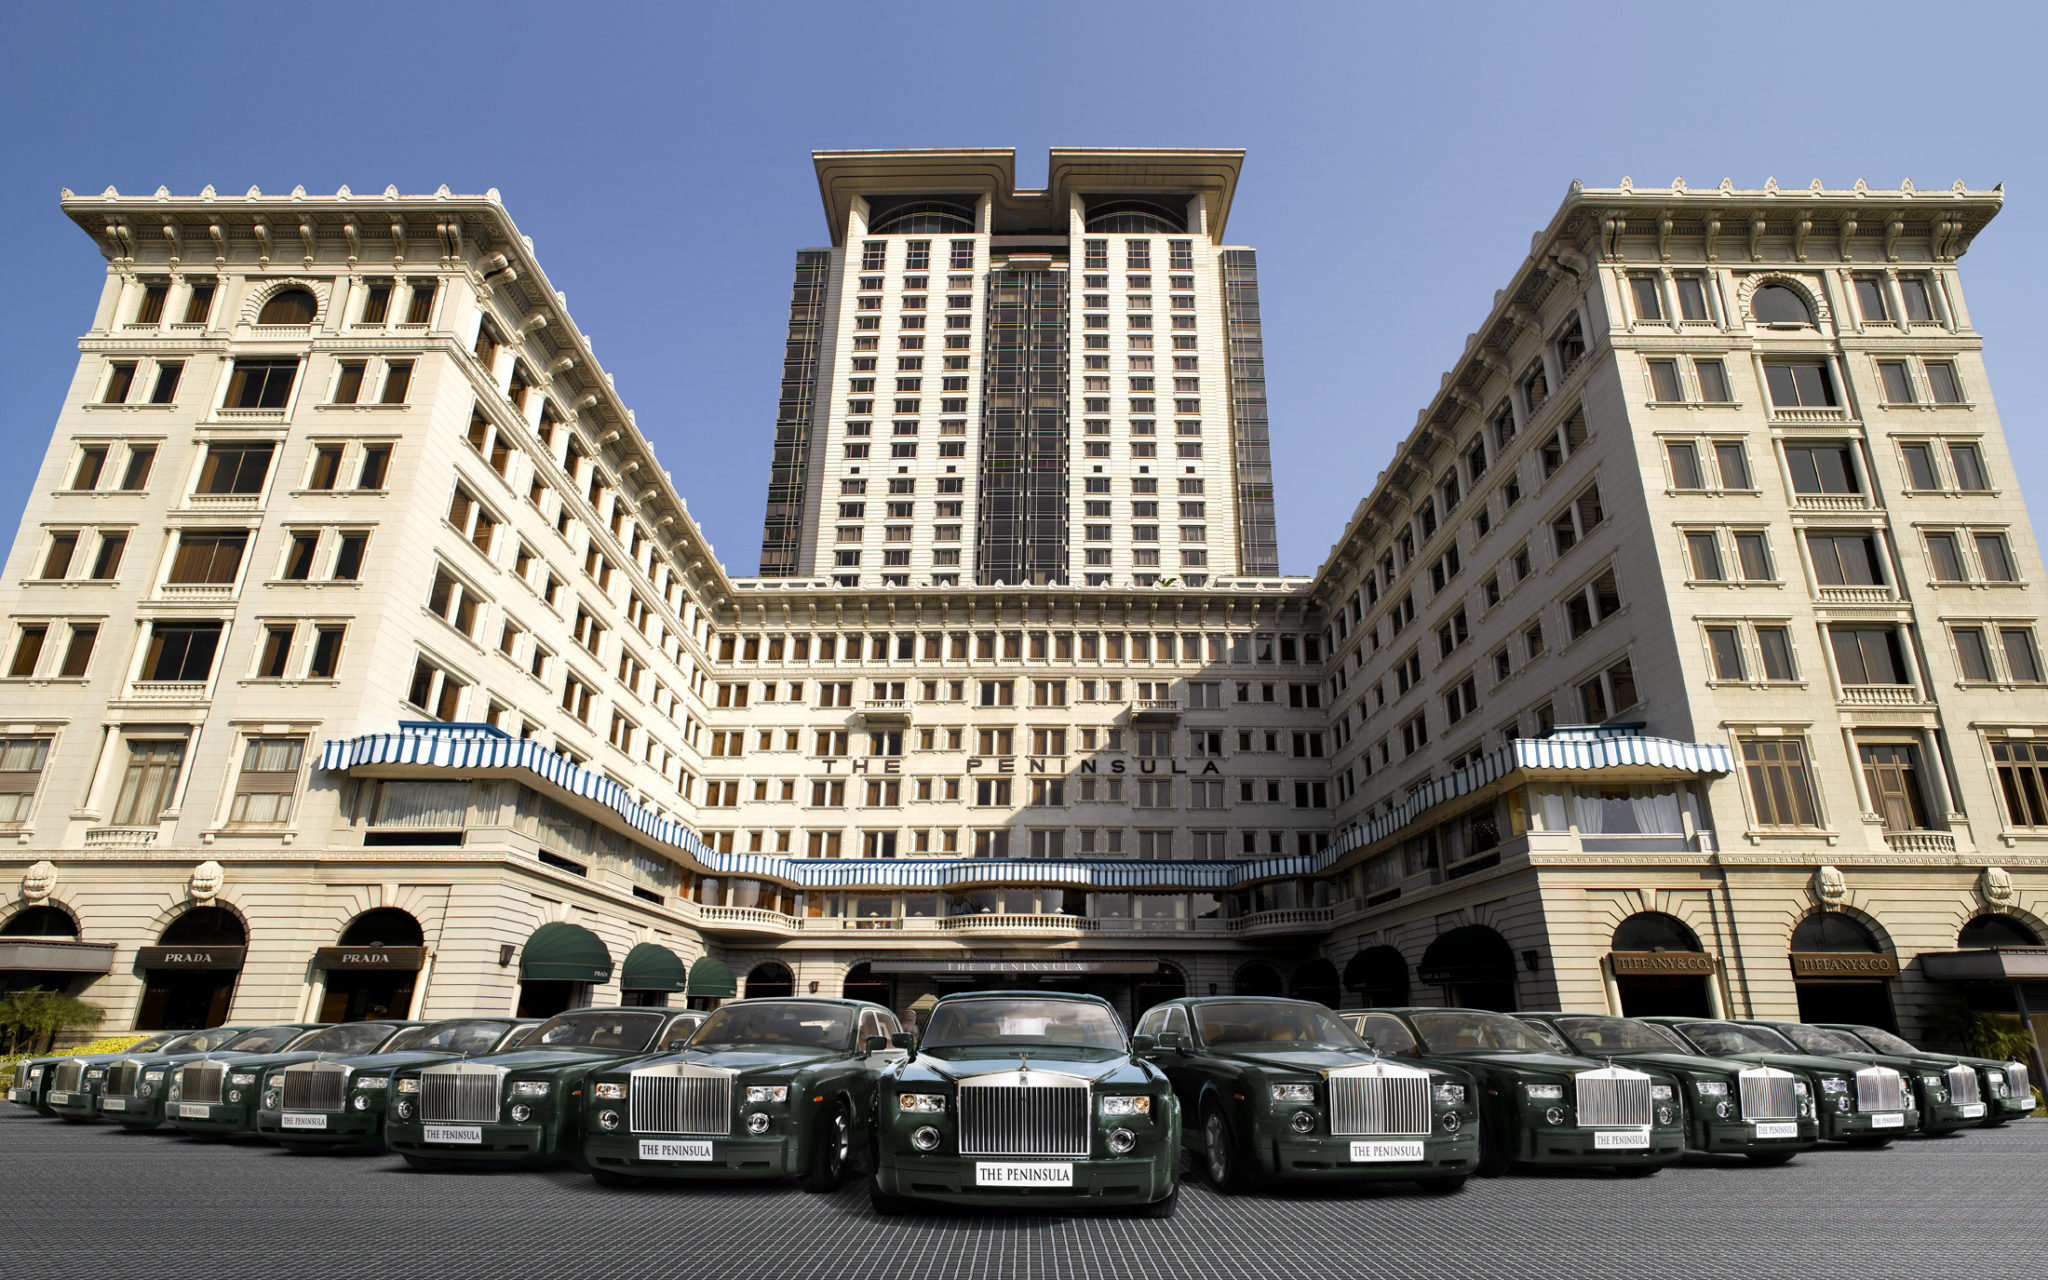 The Peninsula Hong Kong - exterior with Rolls-Royce fleet